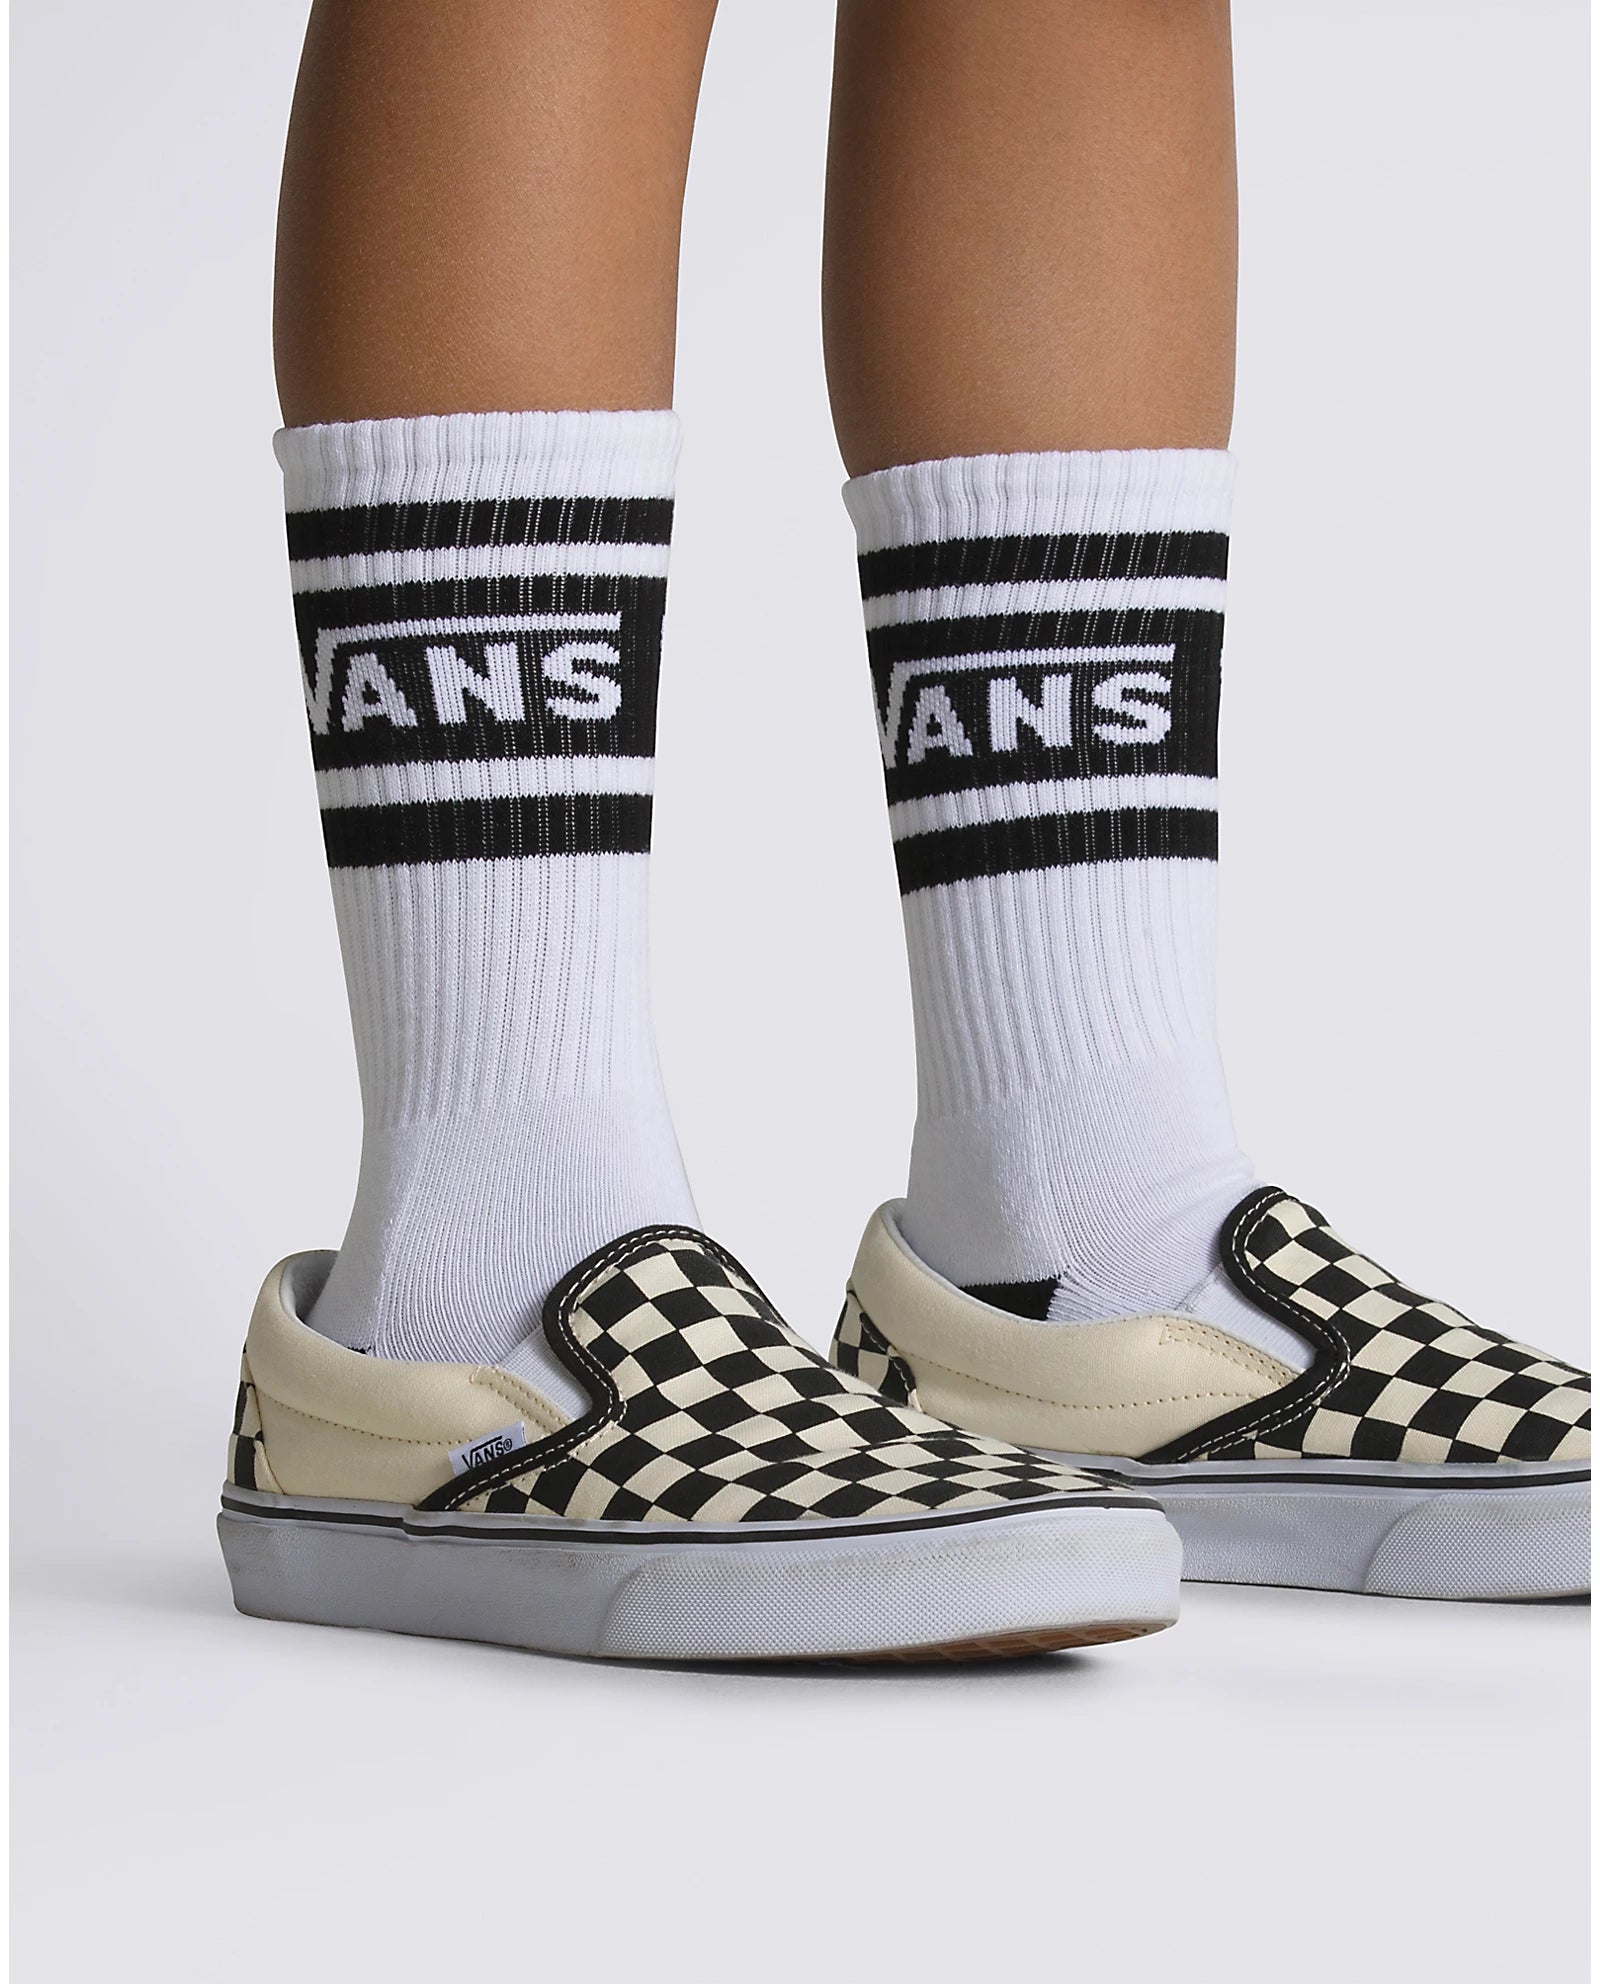 Vans - Drop V Crew Socks